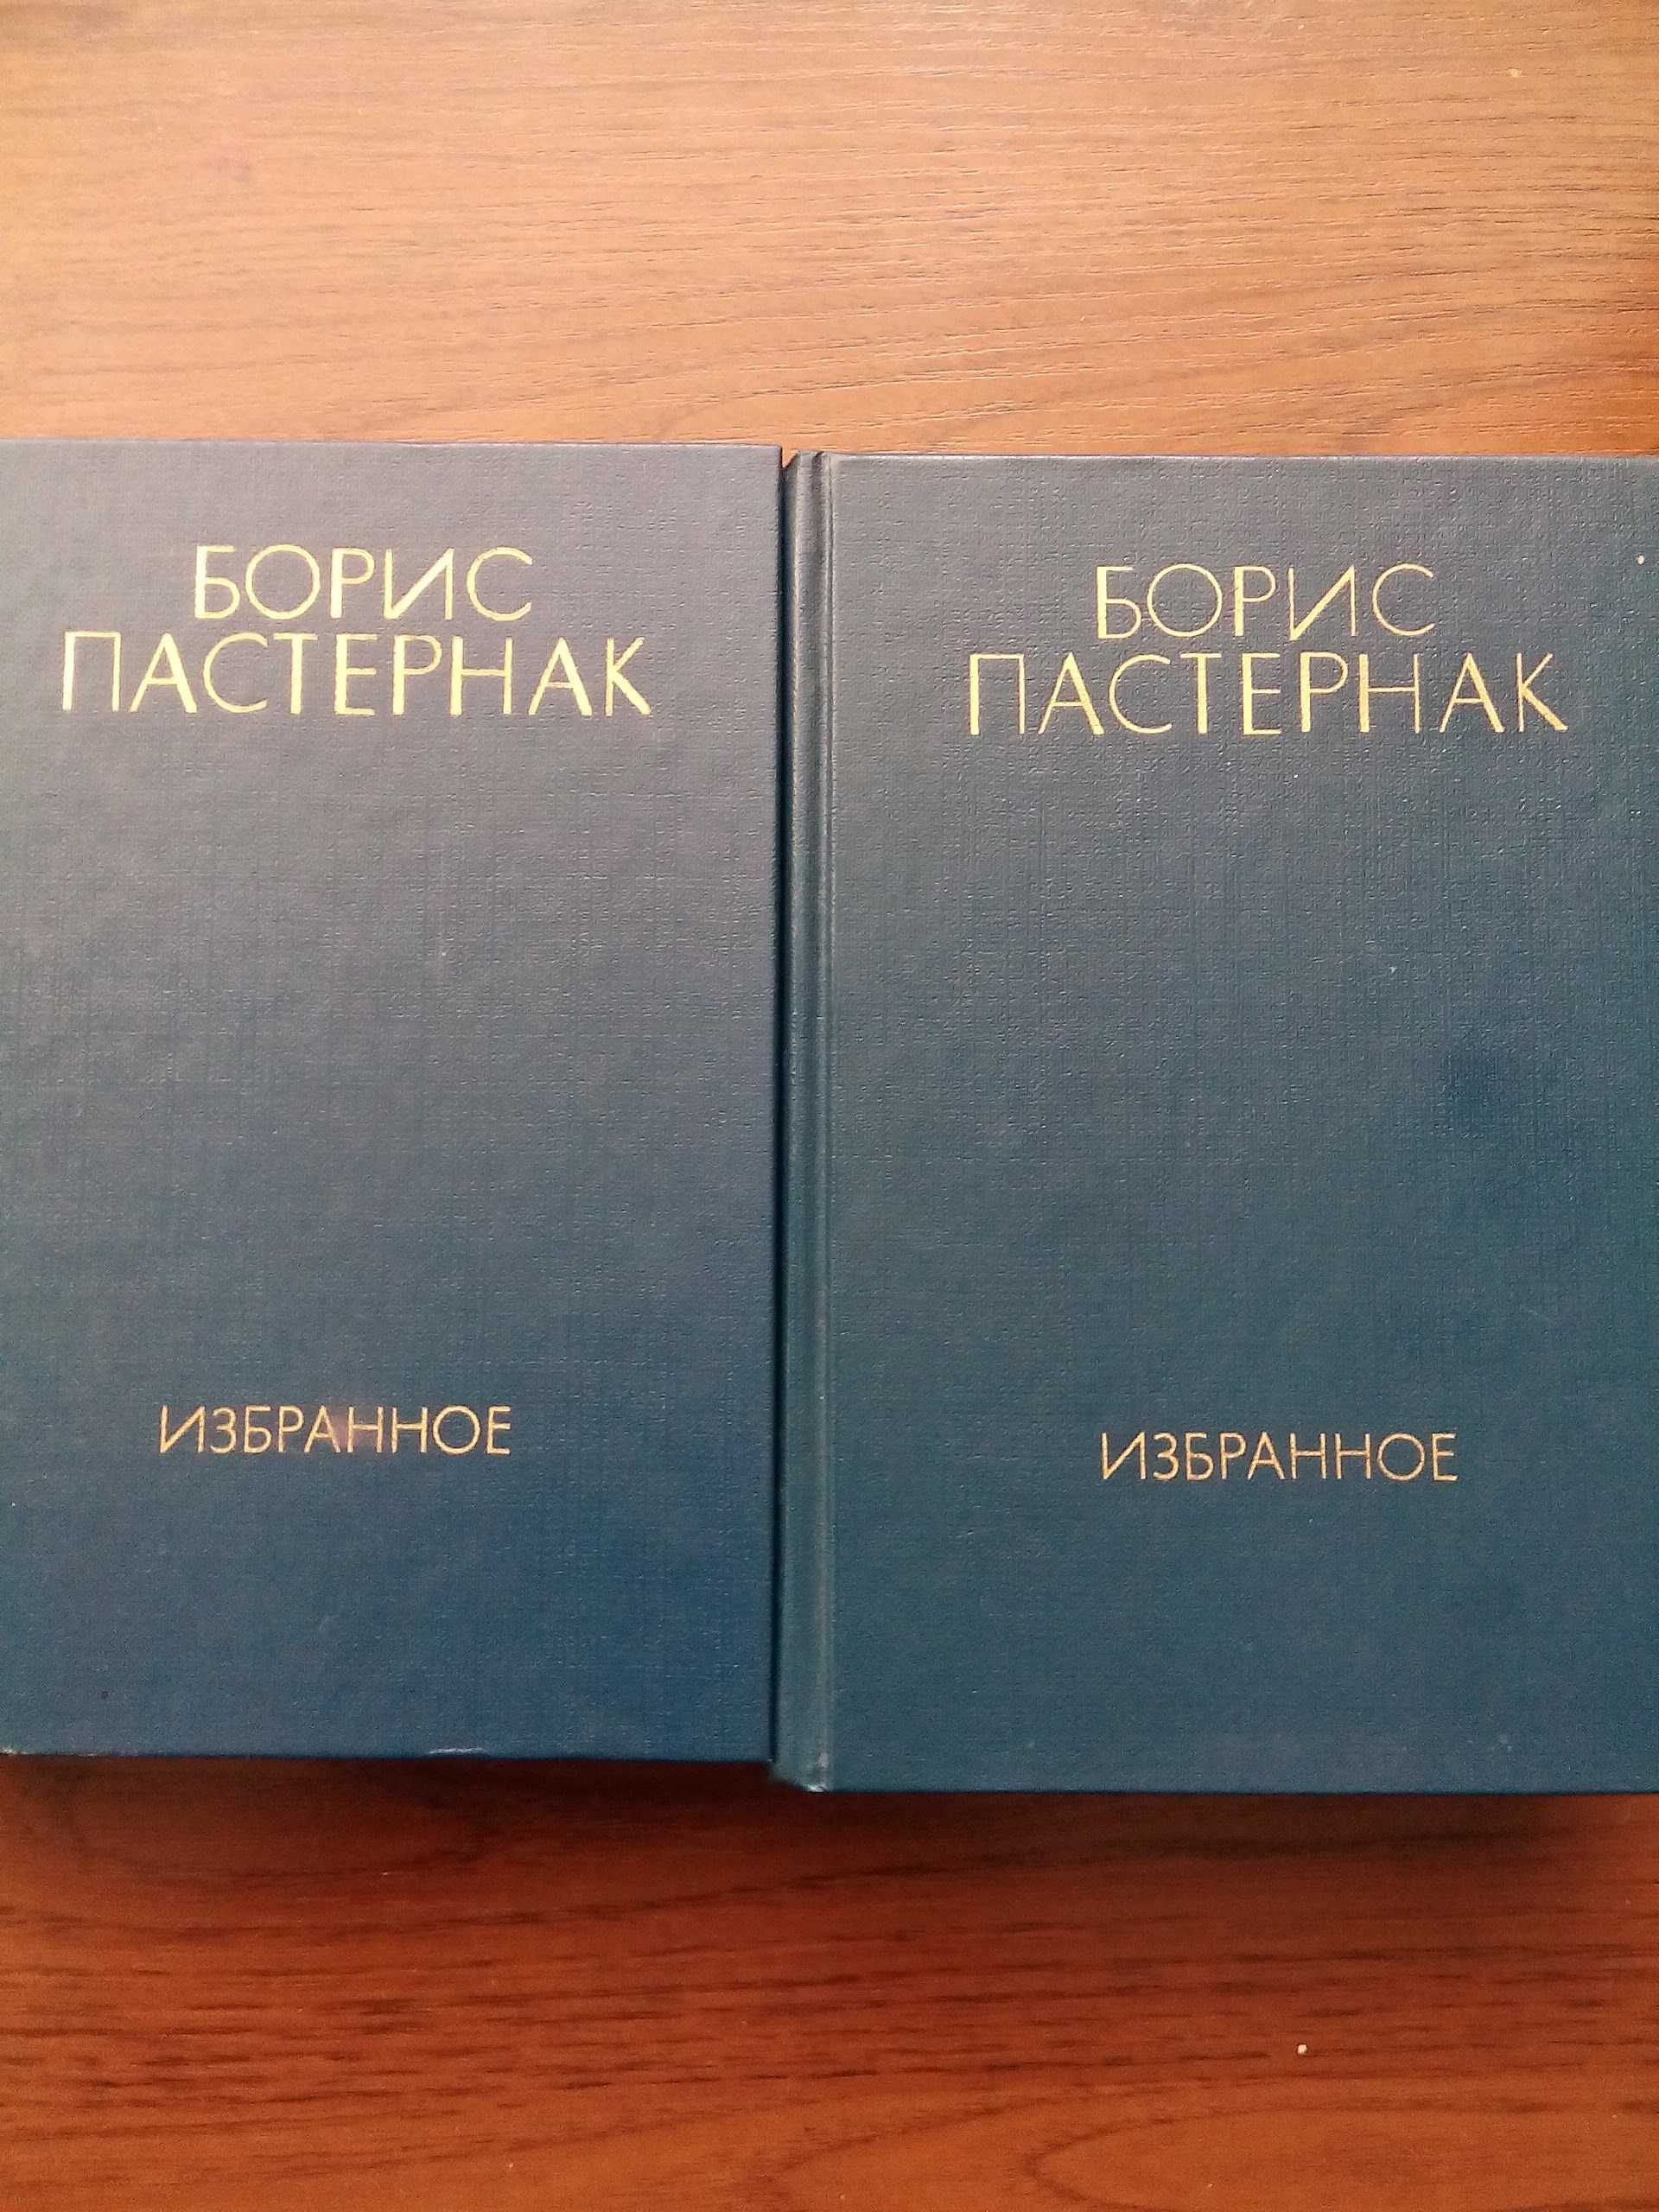 Гоголь, Пастернак, Марк Твен, все в 2-х томах